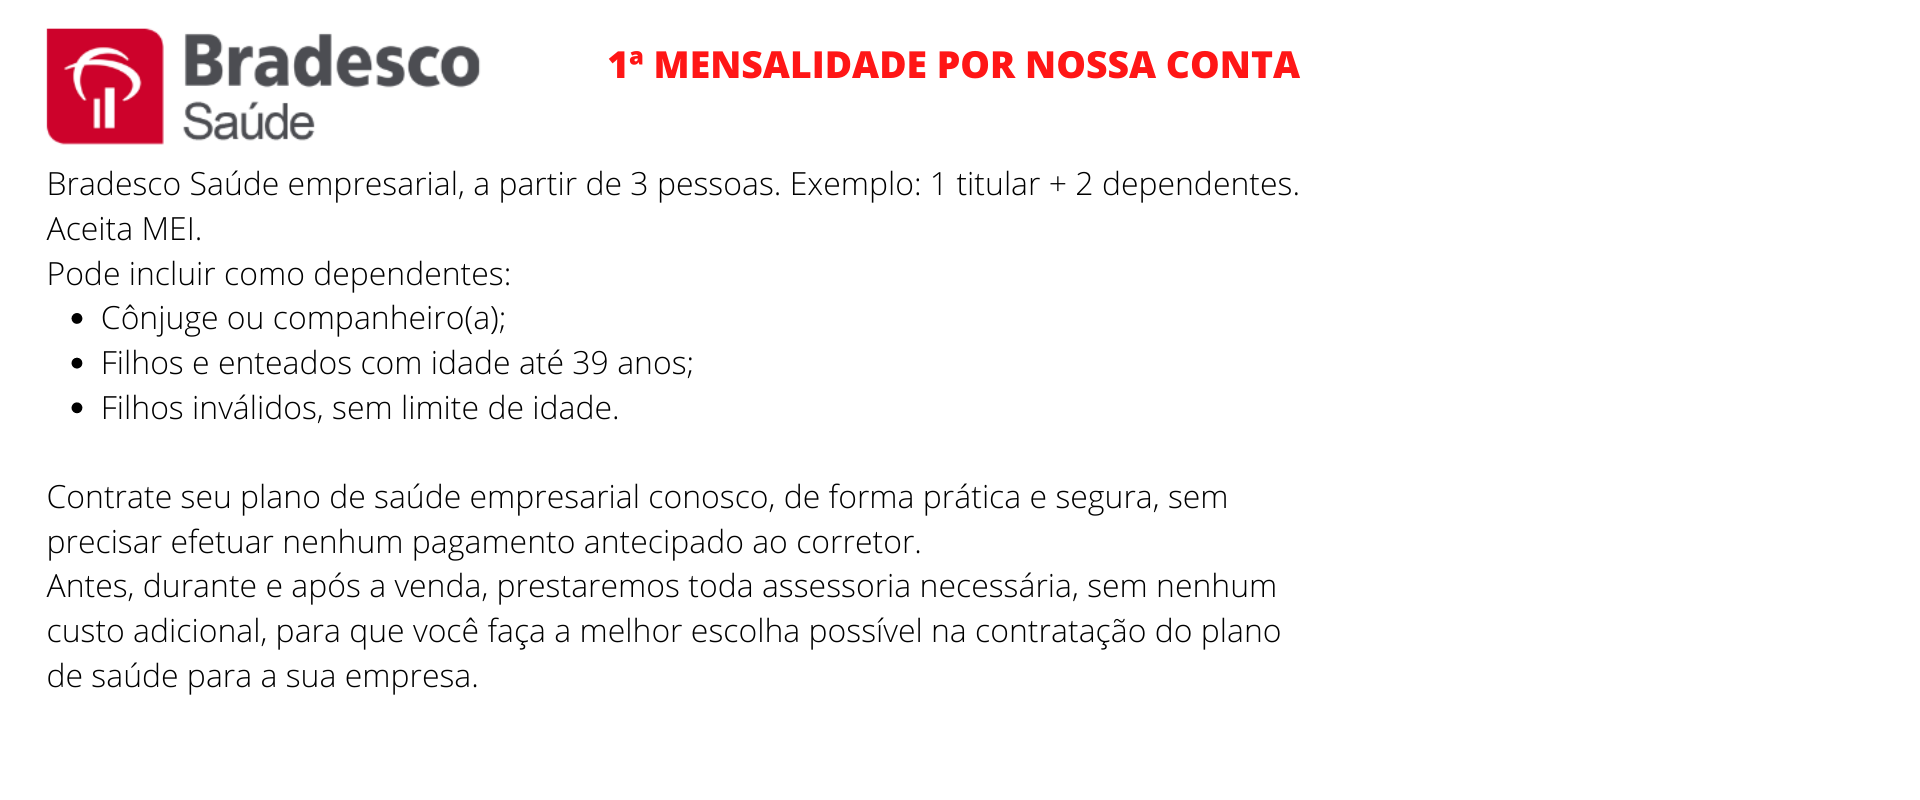 Bradesco Saúde Empresarial - Pirenópolis